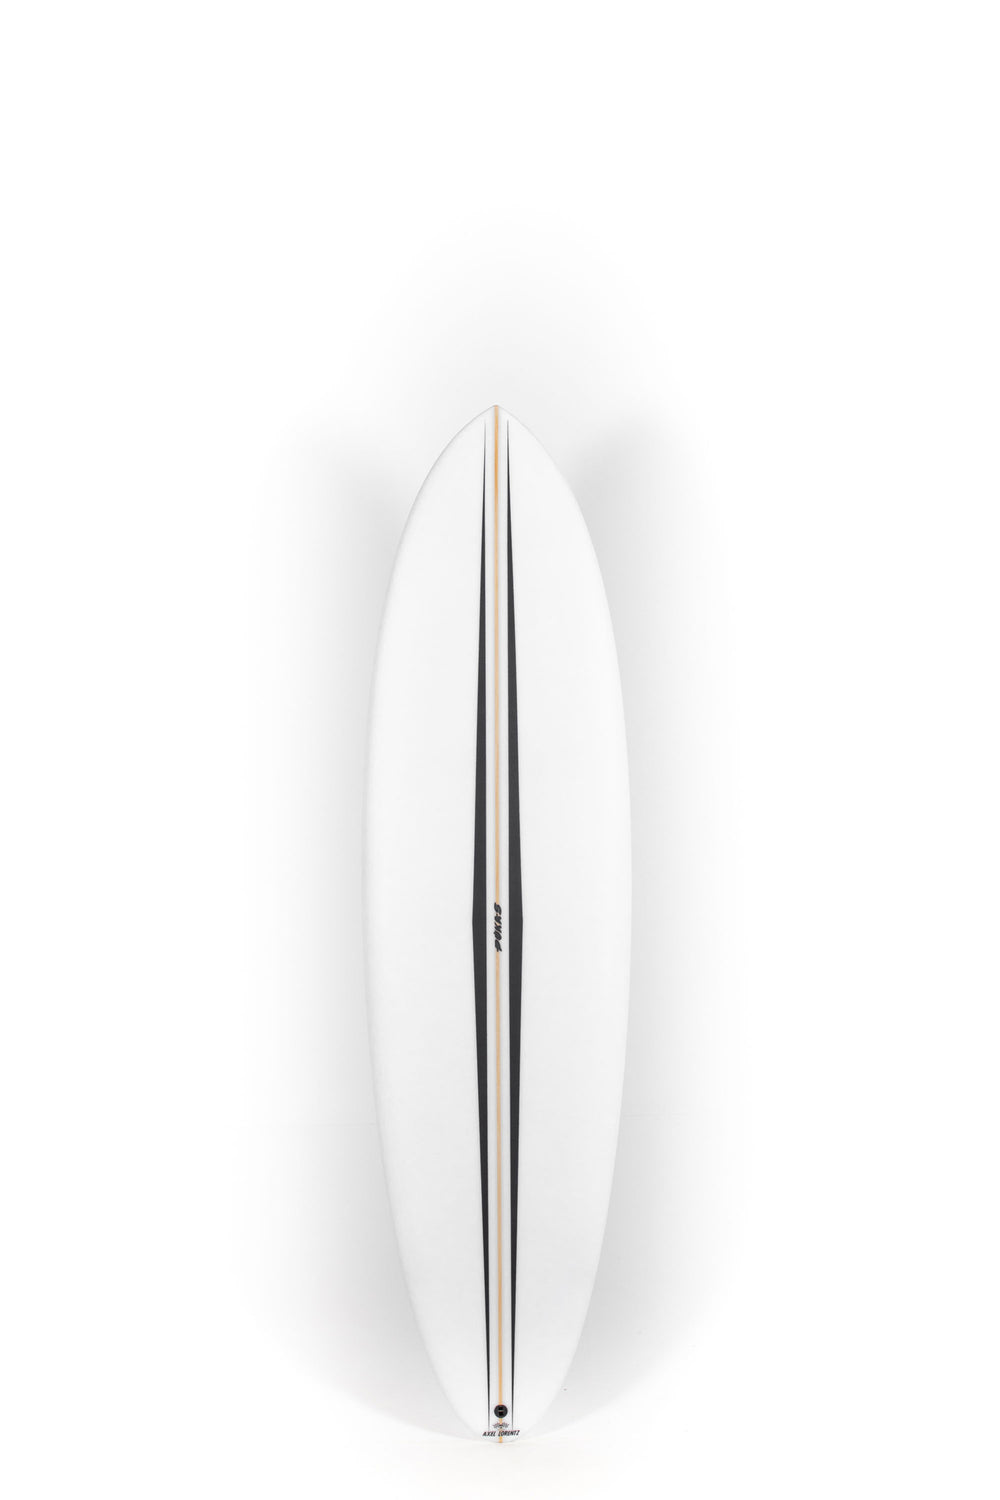 Pukas Surf Shop - Pukas Surfboard - LA CÔTE by Axel Lorentz - 6'9